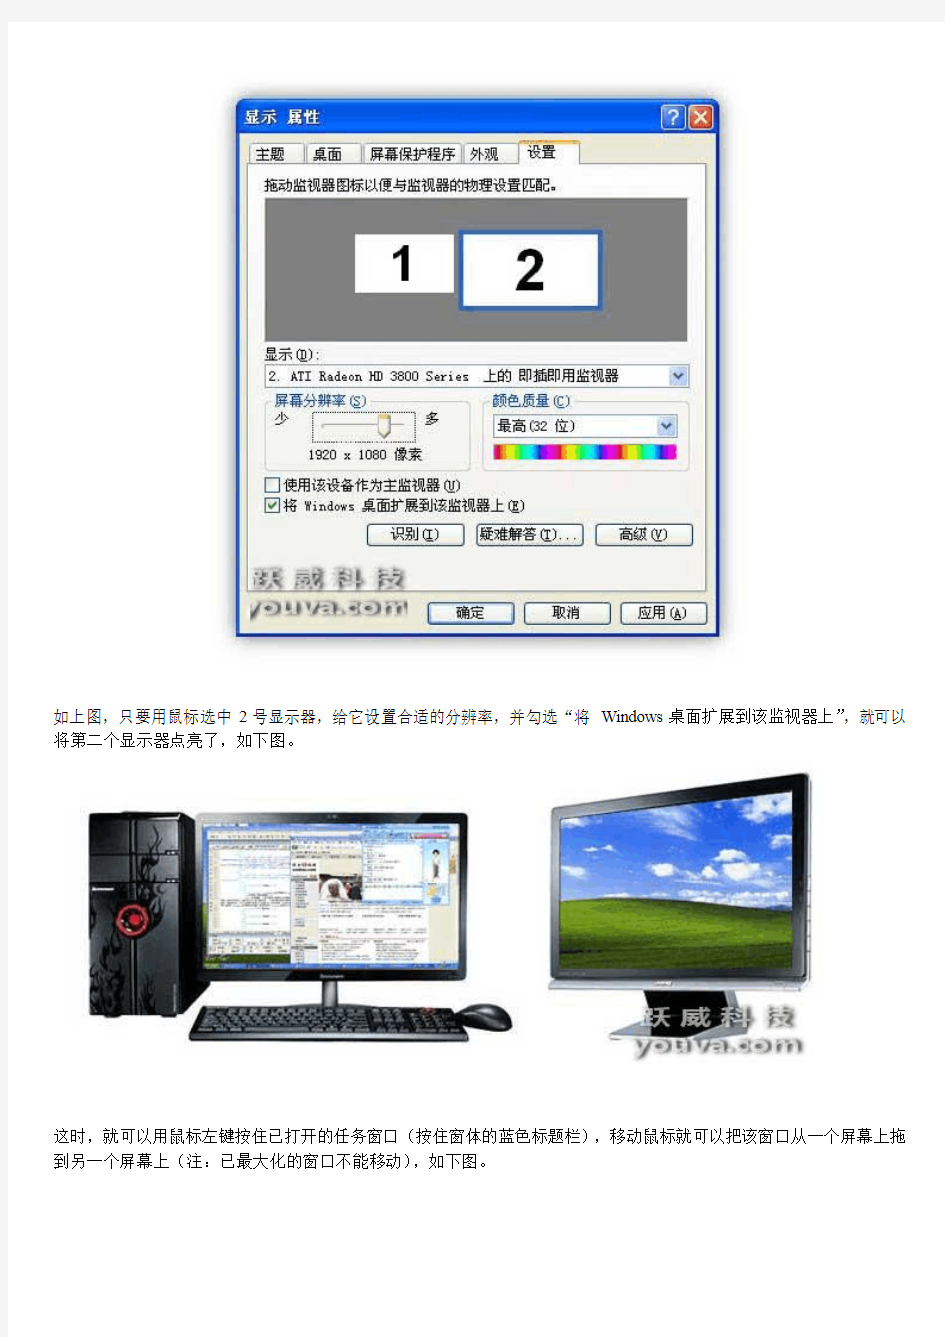 一台电脑接两个显示器,双屏显示(VGA篇、HDMI篇)全攻略